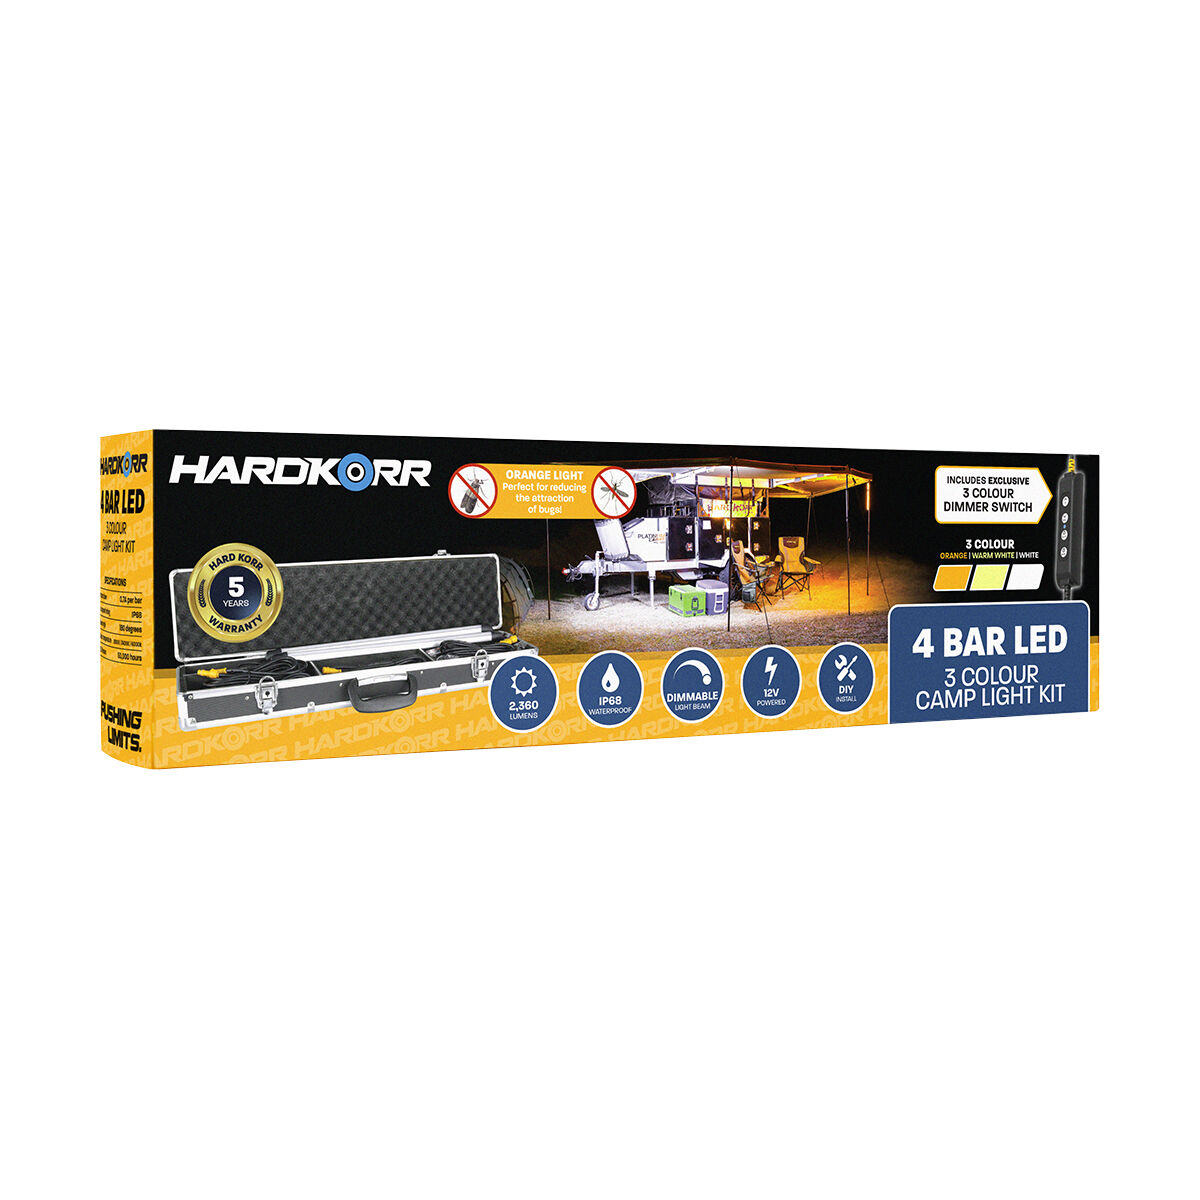 Hardkorr 4 Bar Tri-Colour LED Camp Light Kit